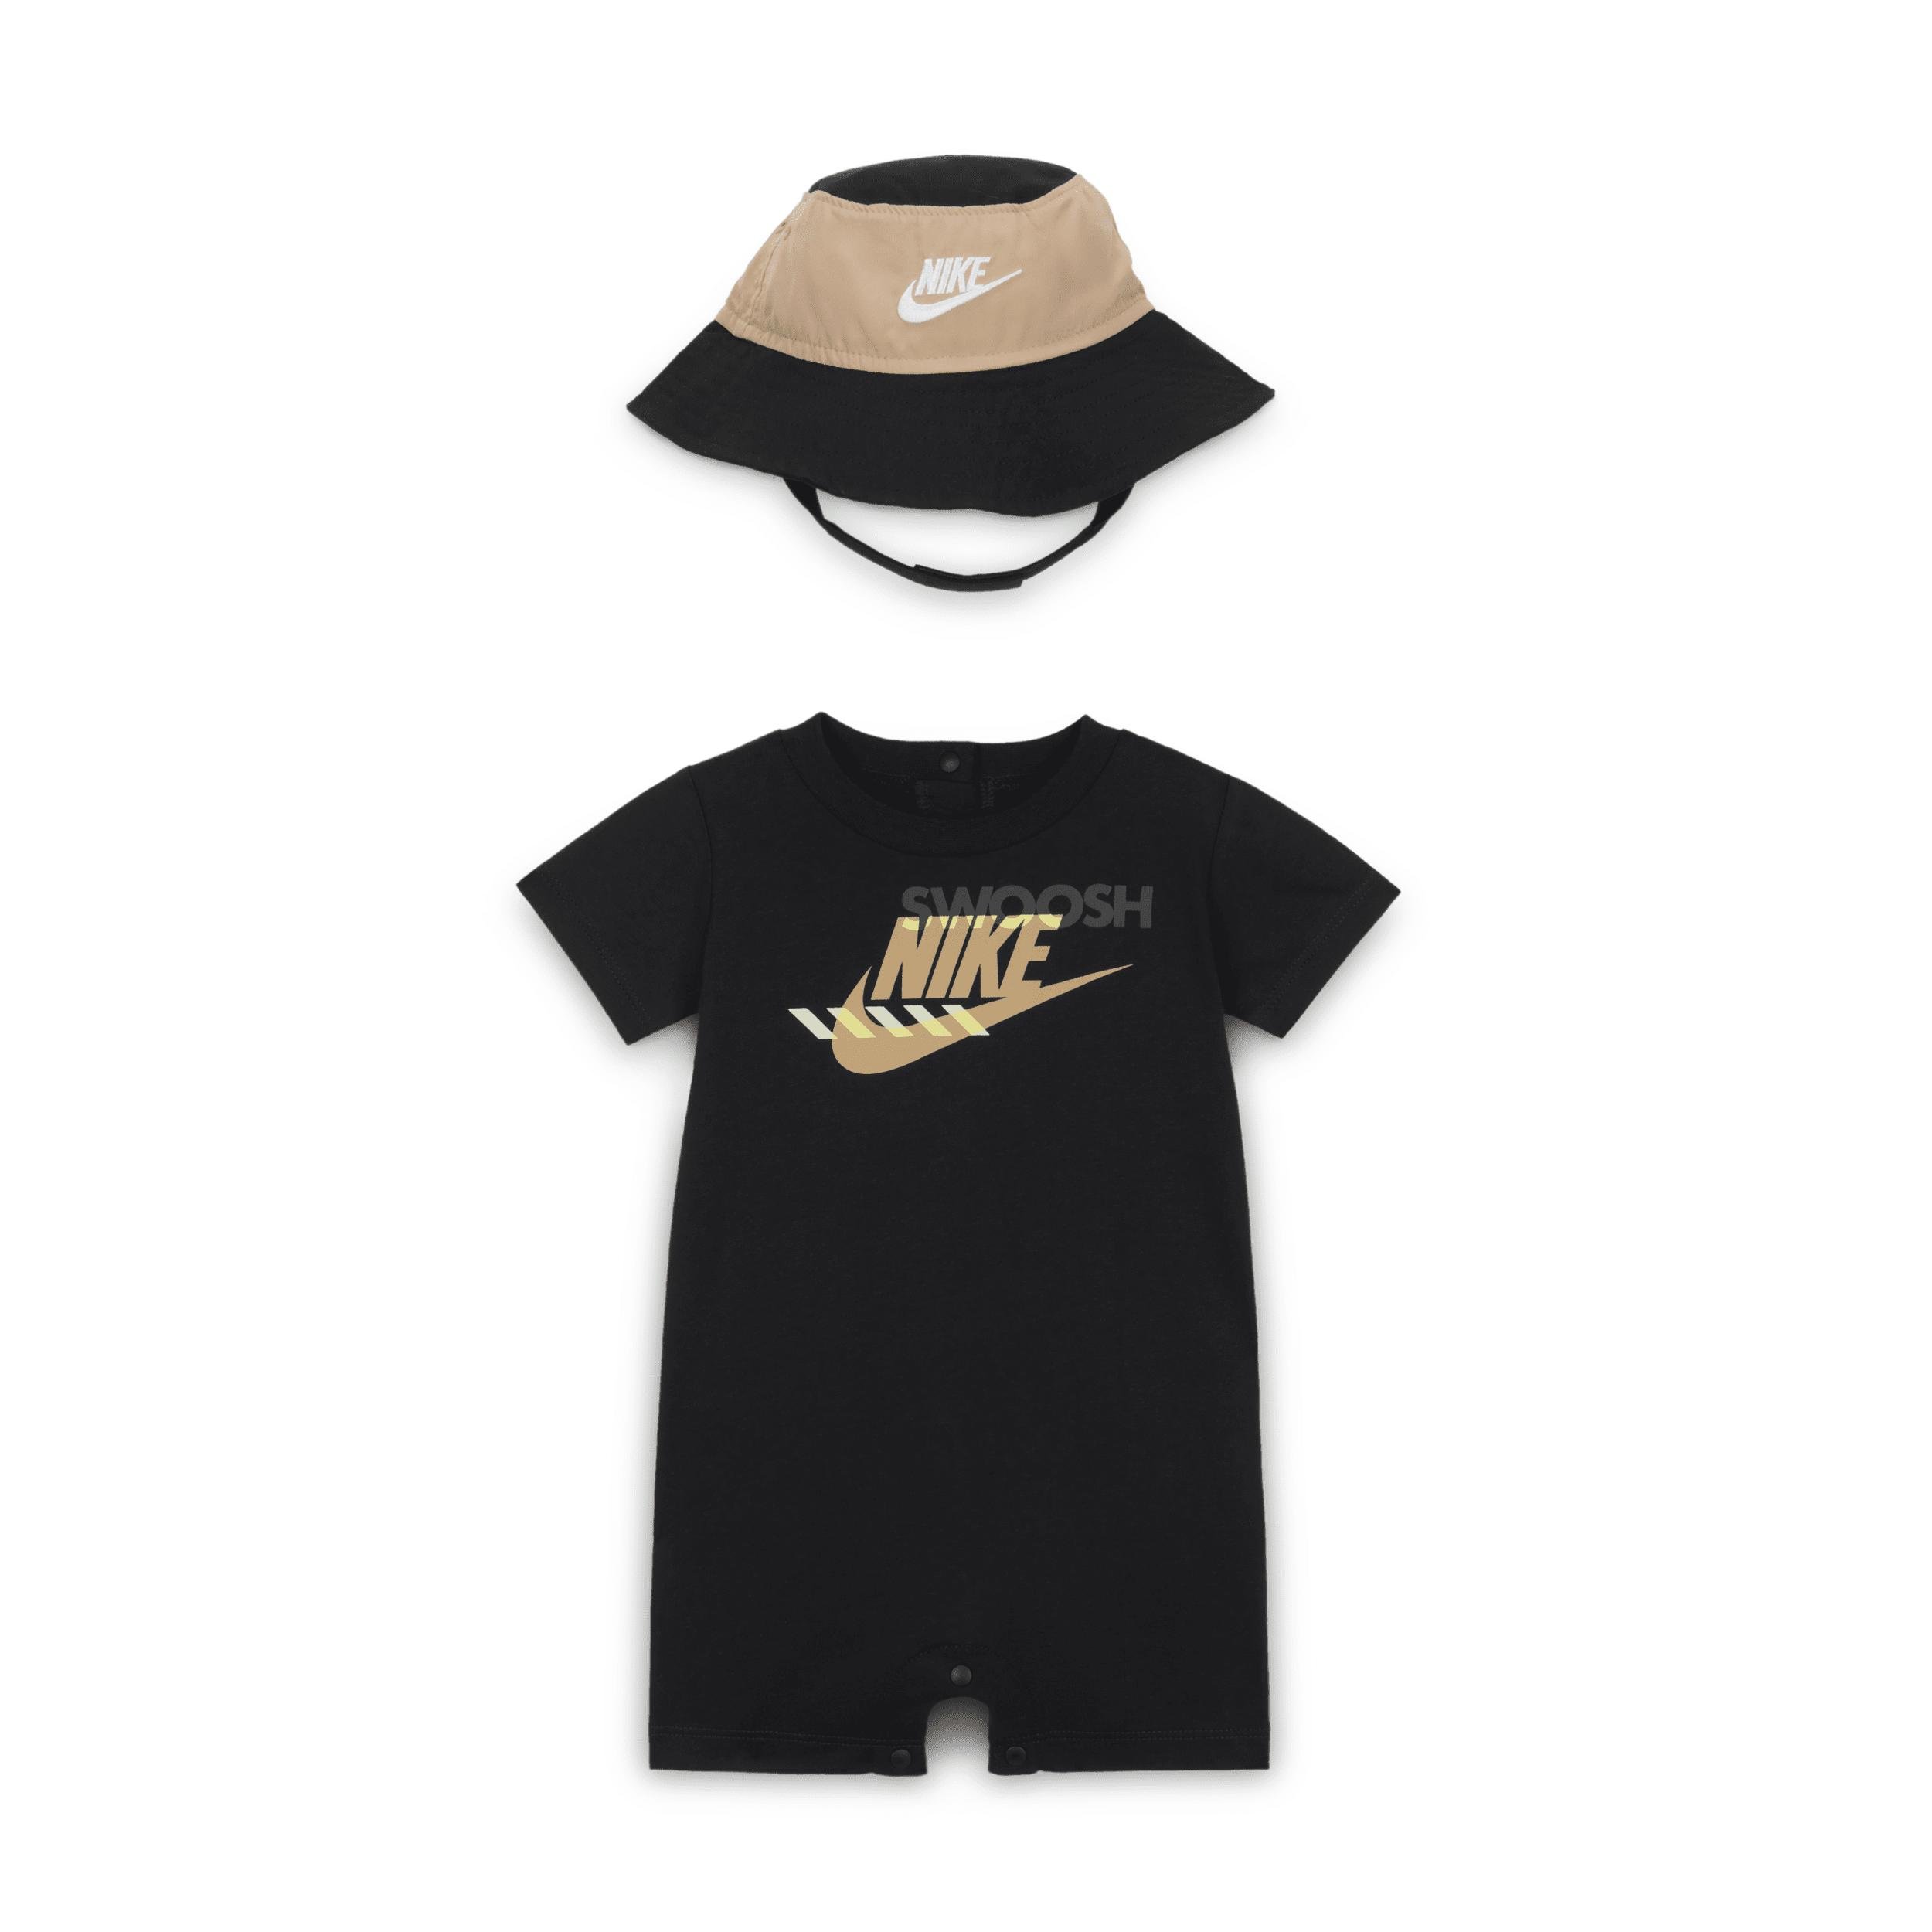 Nike Sportswear PE Baby (0-9M) Romper and Bucket Hat Set by NIKE